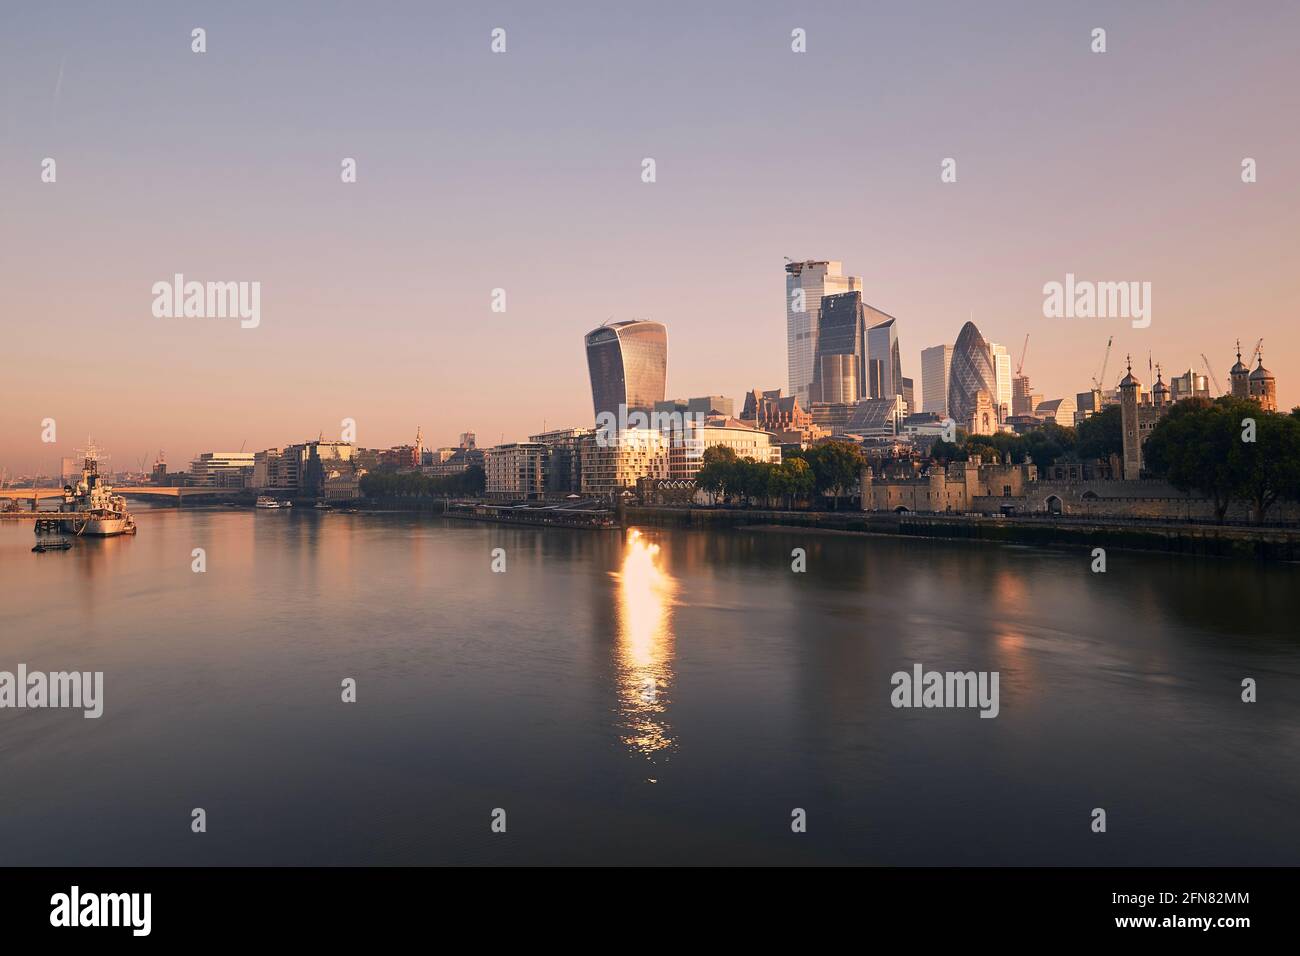 Vue sur la Tamise, au bord de la rivière, contre les gratte-ciel. Horizon urbain de Londres à la lumière du matin , Royaume-Uni. Banque D'Images